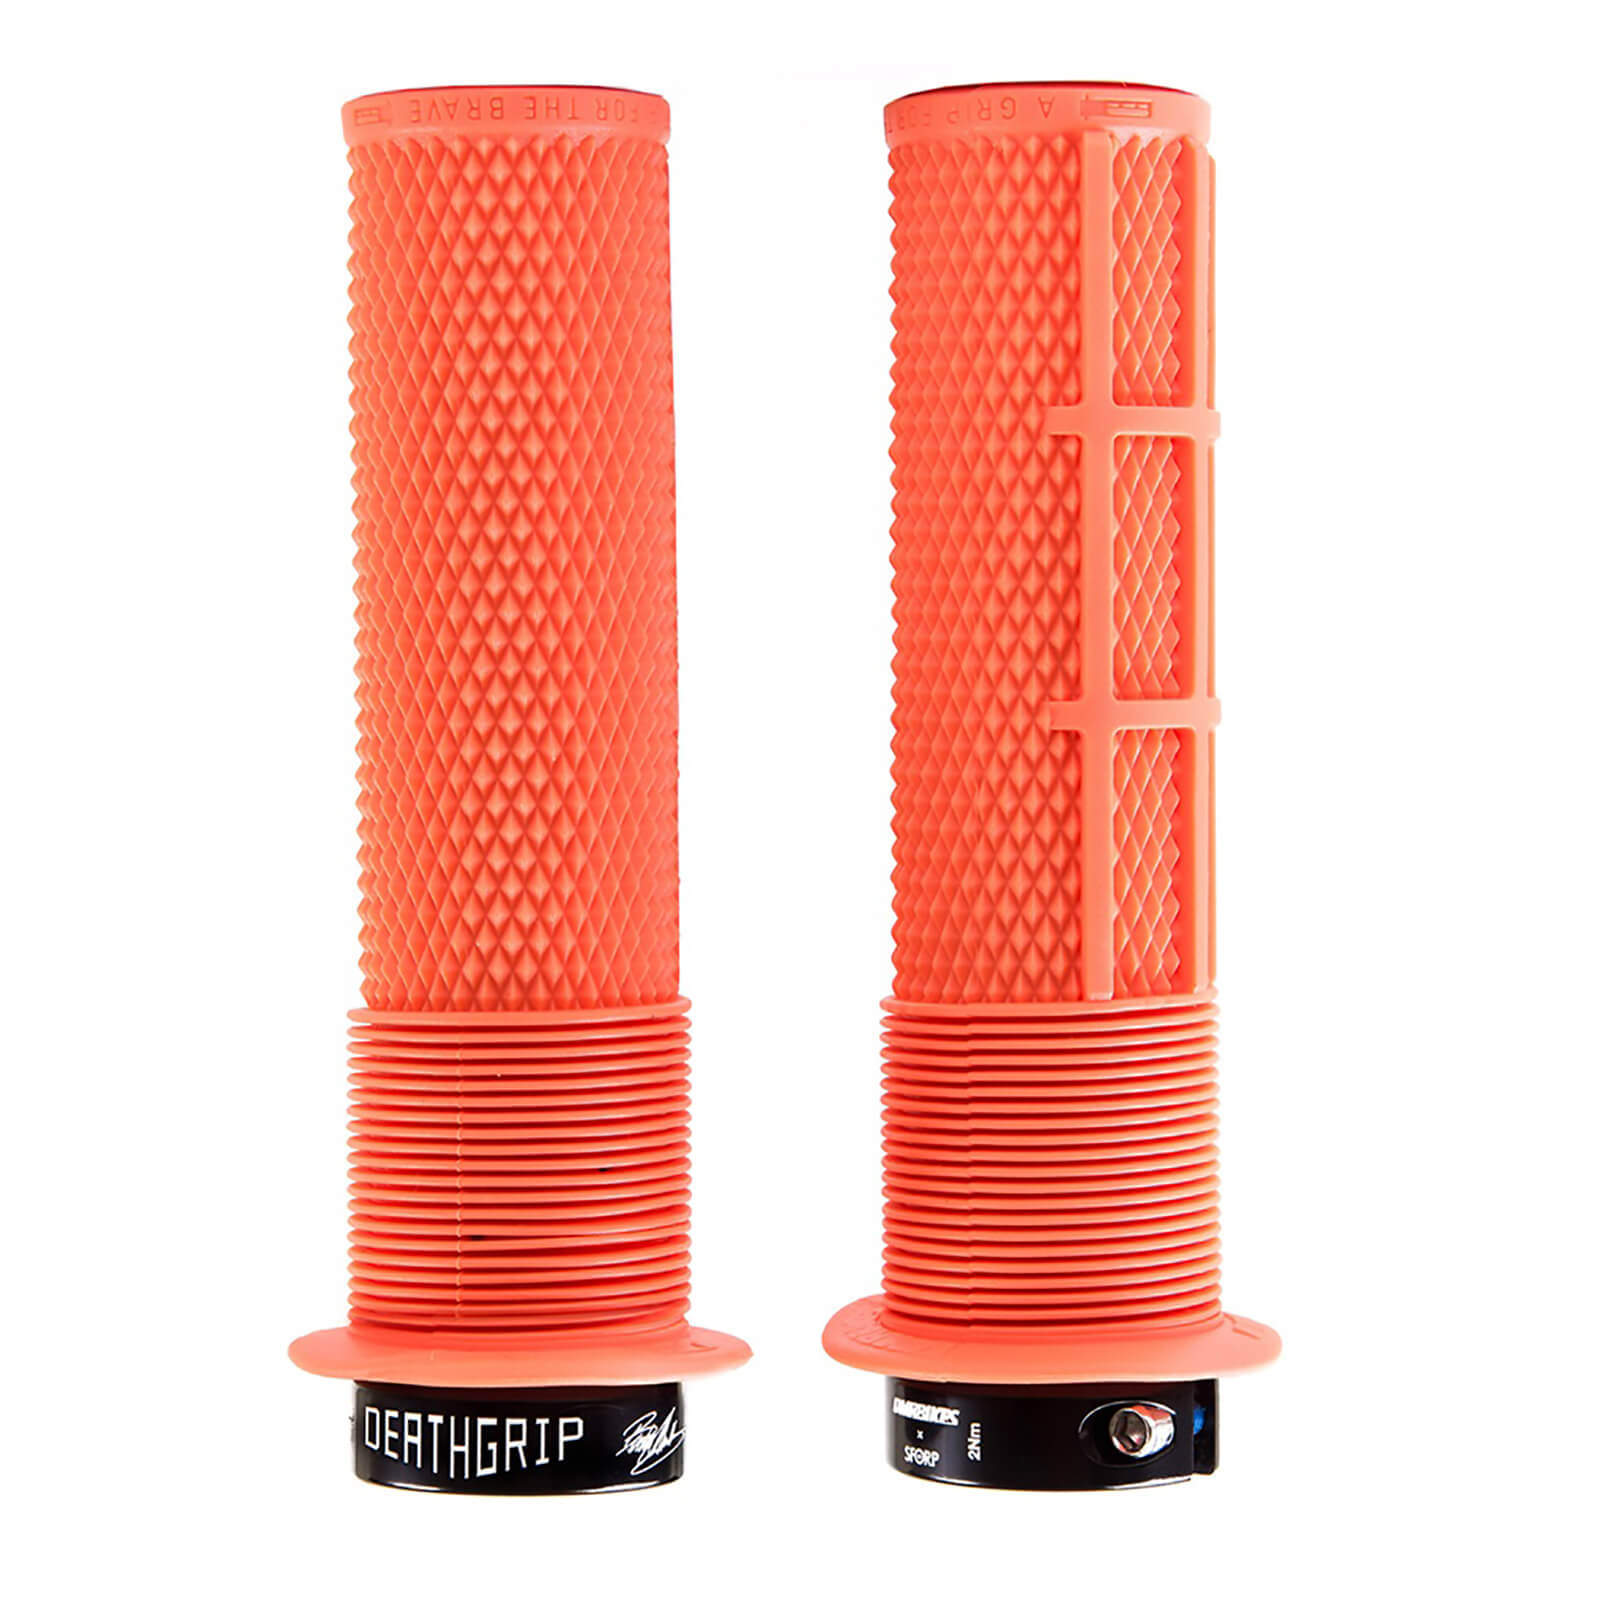 DMR Brendog Death Grip - Thin - 29.8mm - Orange